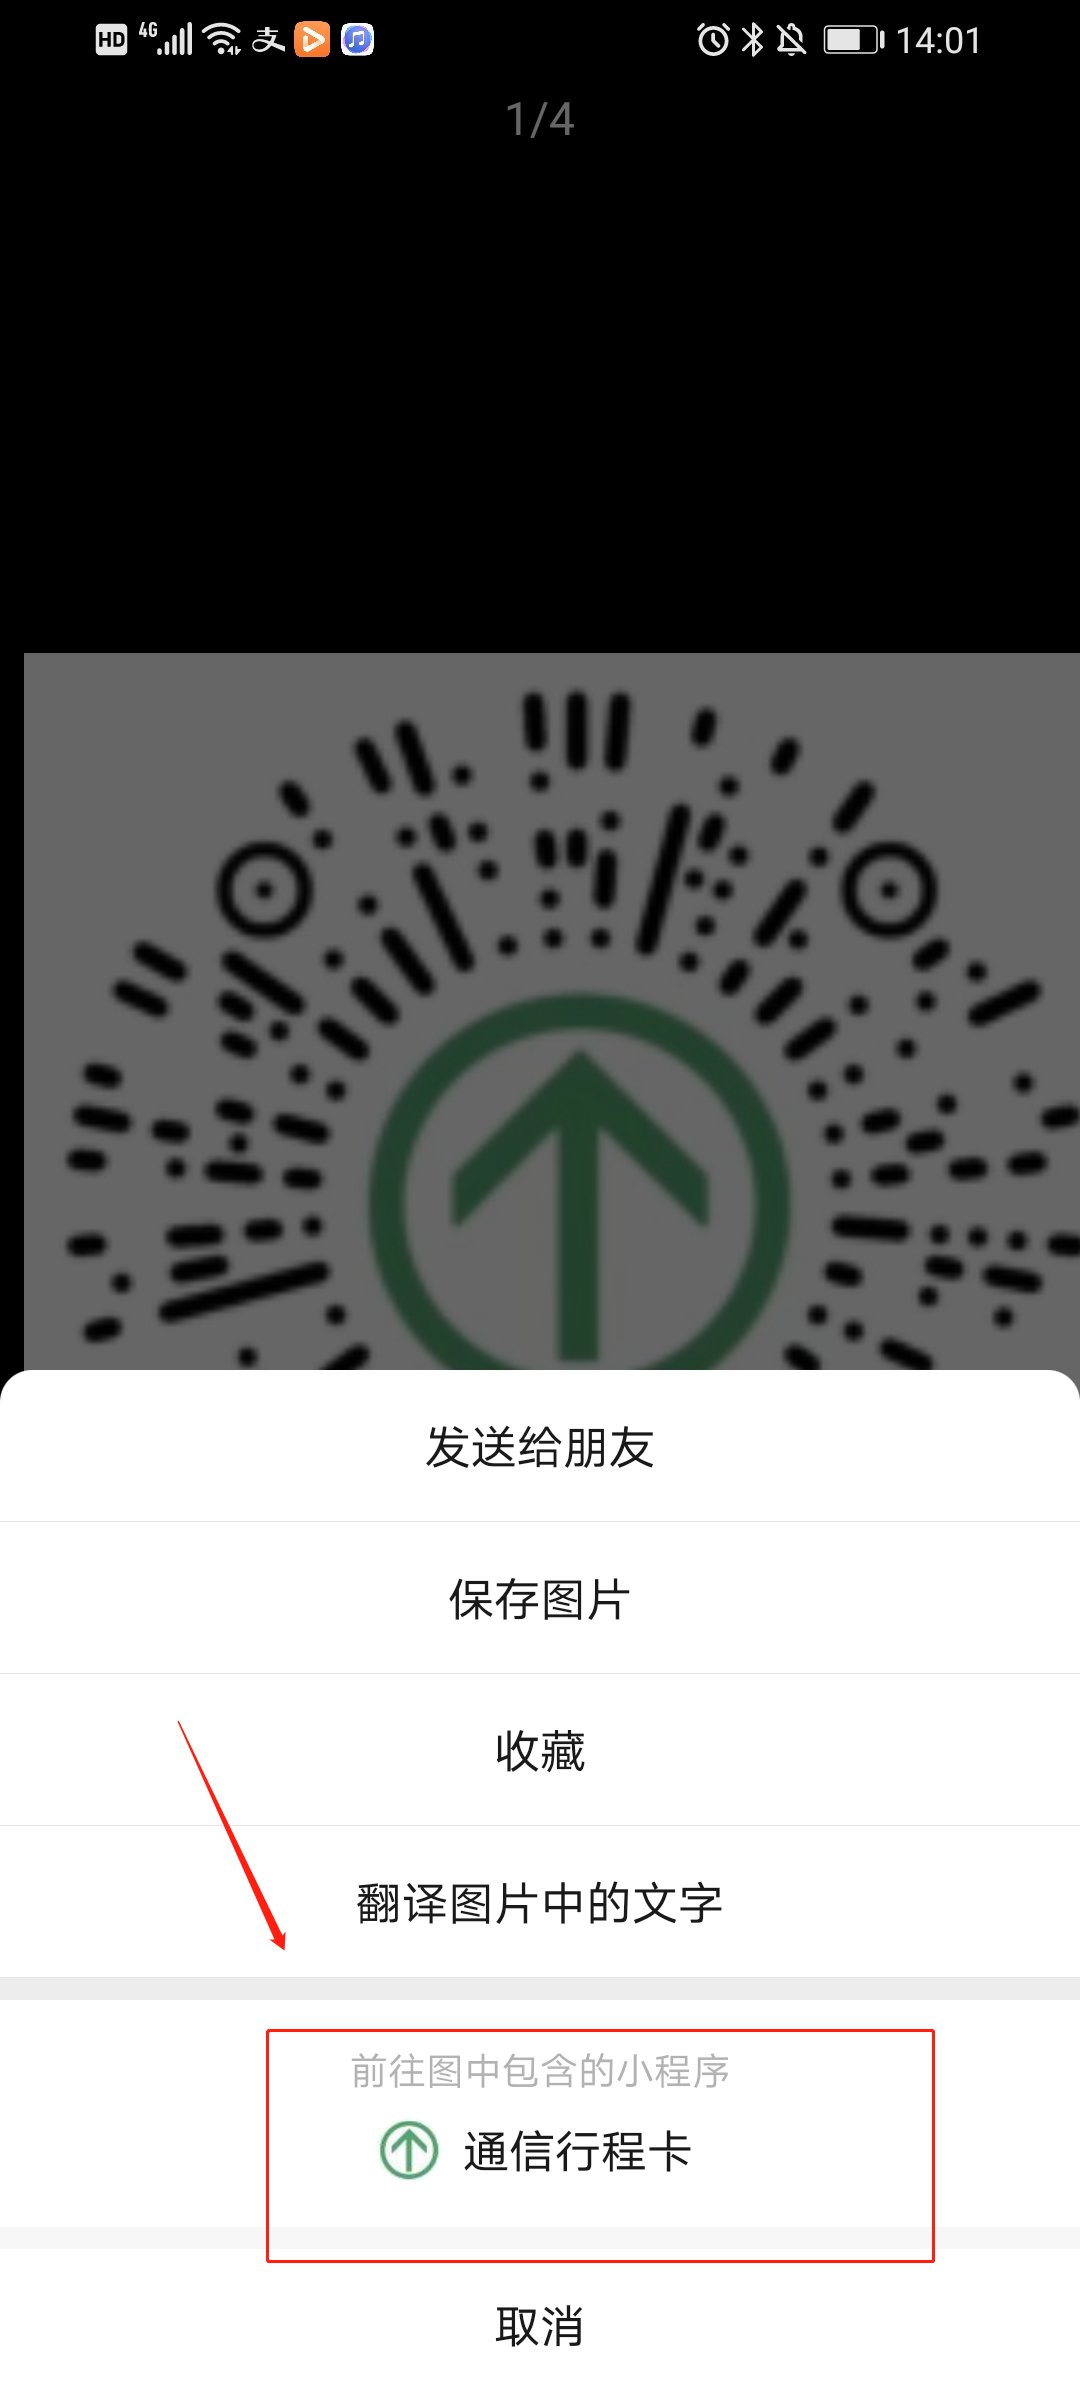 行程码二维码图片贵州图片